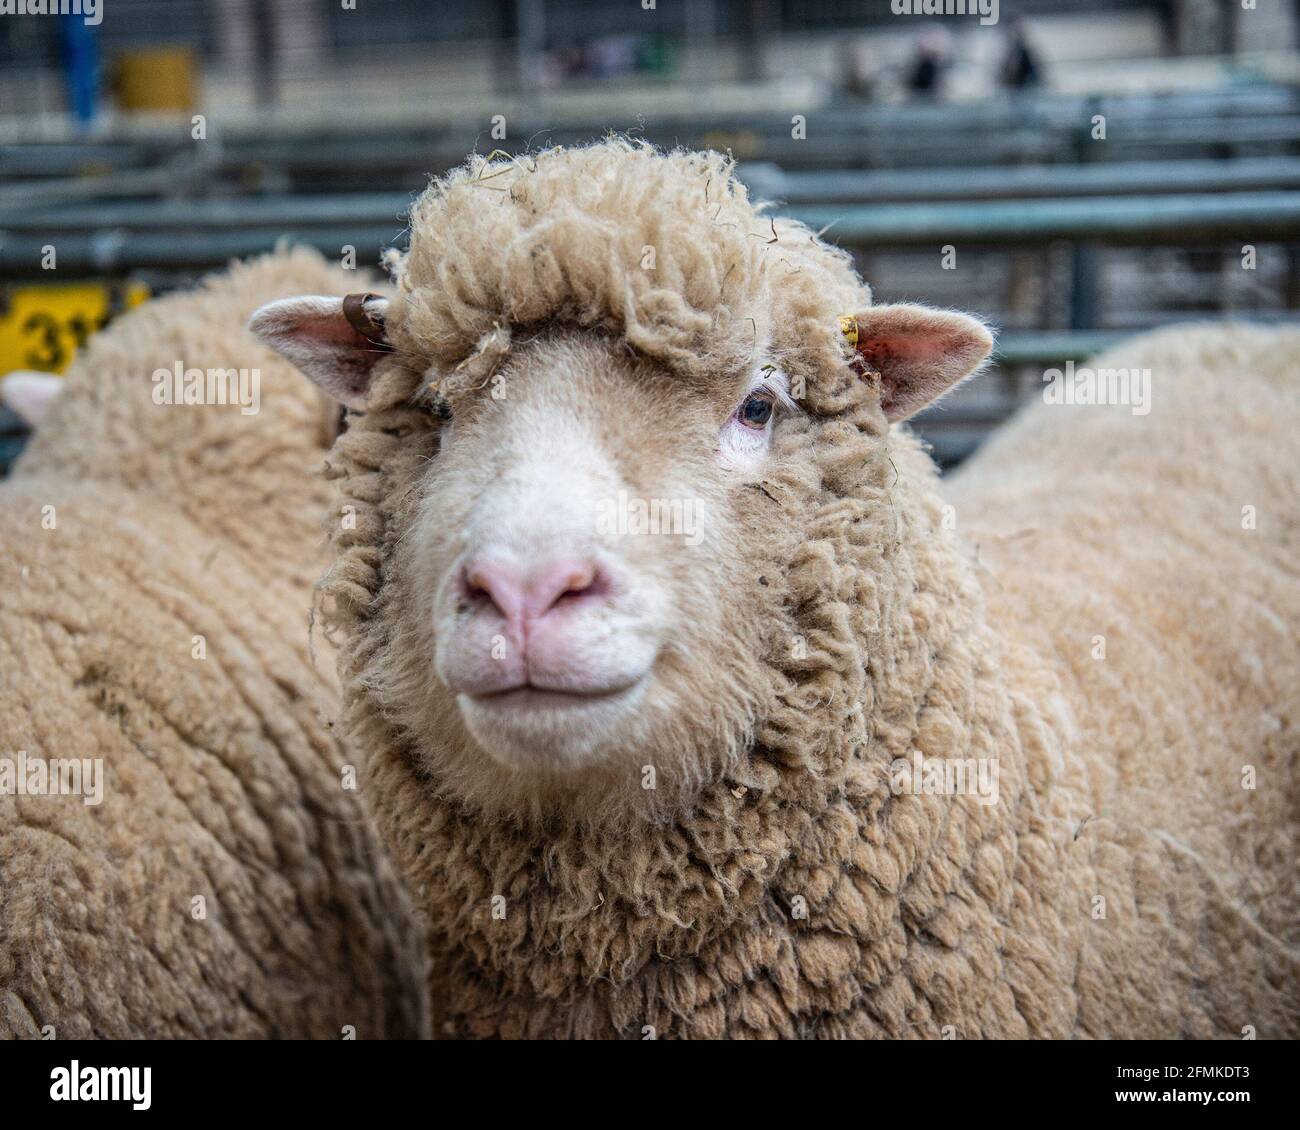 Sondage Dorset Sheep au marché de l'élevage Banque D'Images